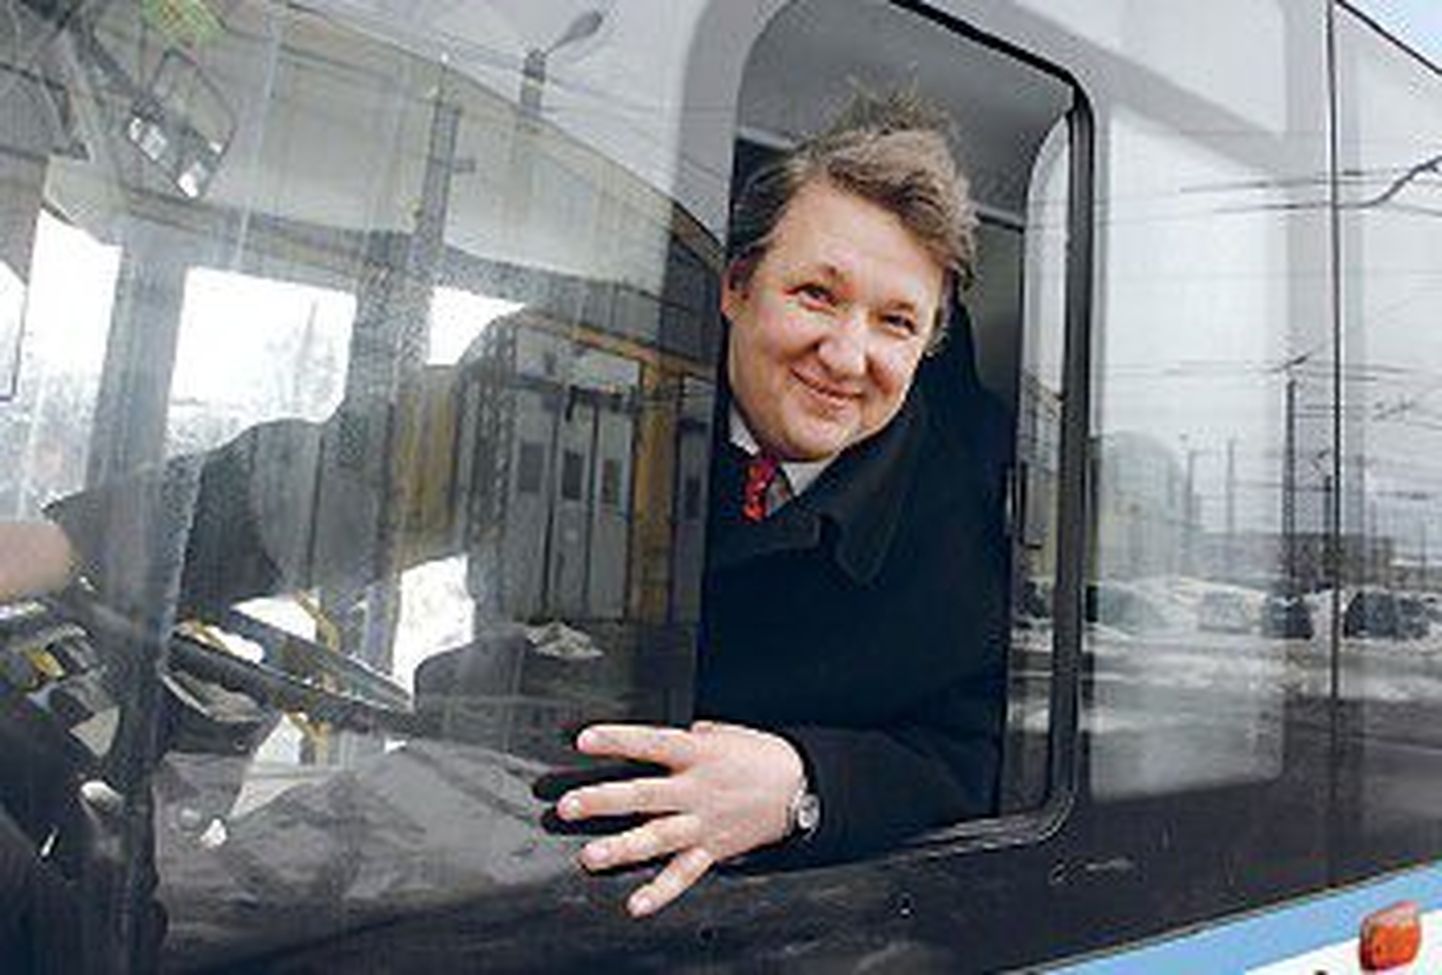 Председатель правления Таллиннского трамвайного-троллейбусного объединения Тоомас Сепп обеспокоен тем, что если не будет найдено дополнительных средств, то в следующем году какой-нибудь троллейбусный маршрут в Таллинне может исчезнуть.